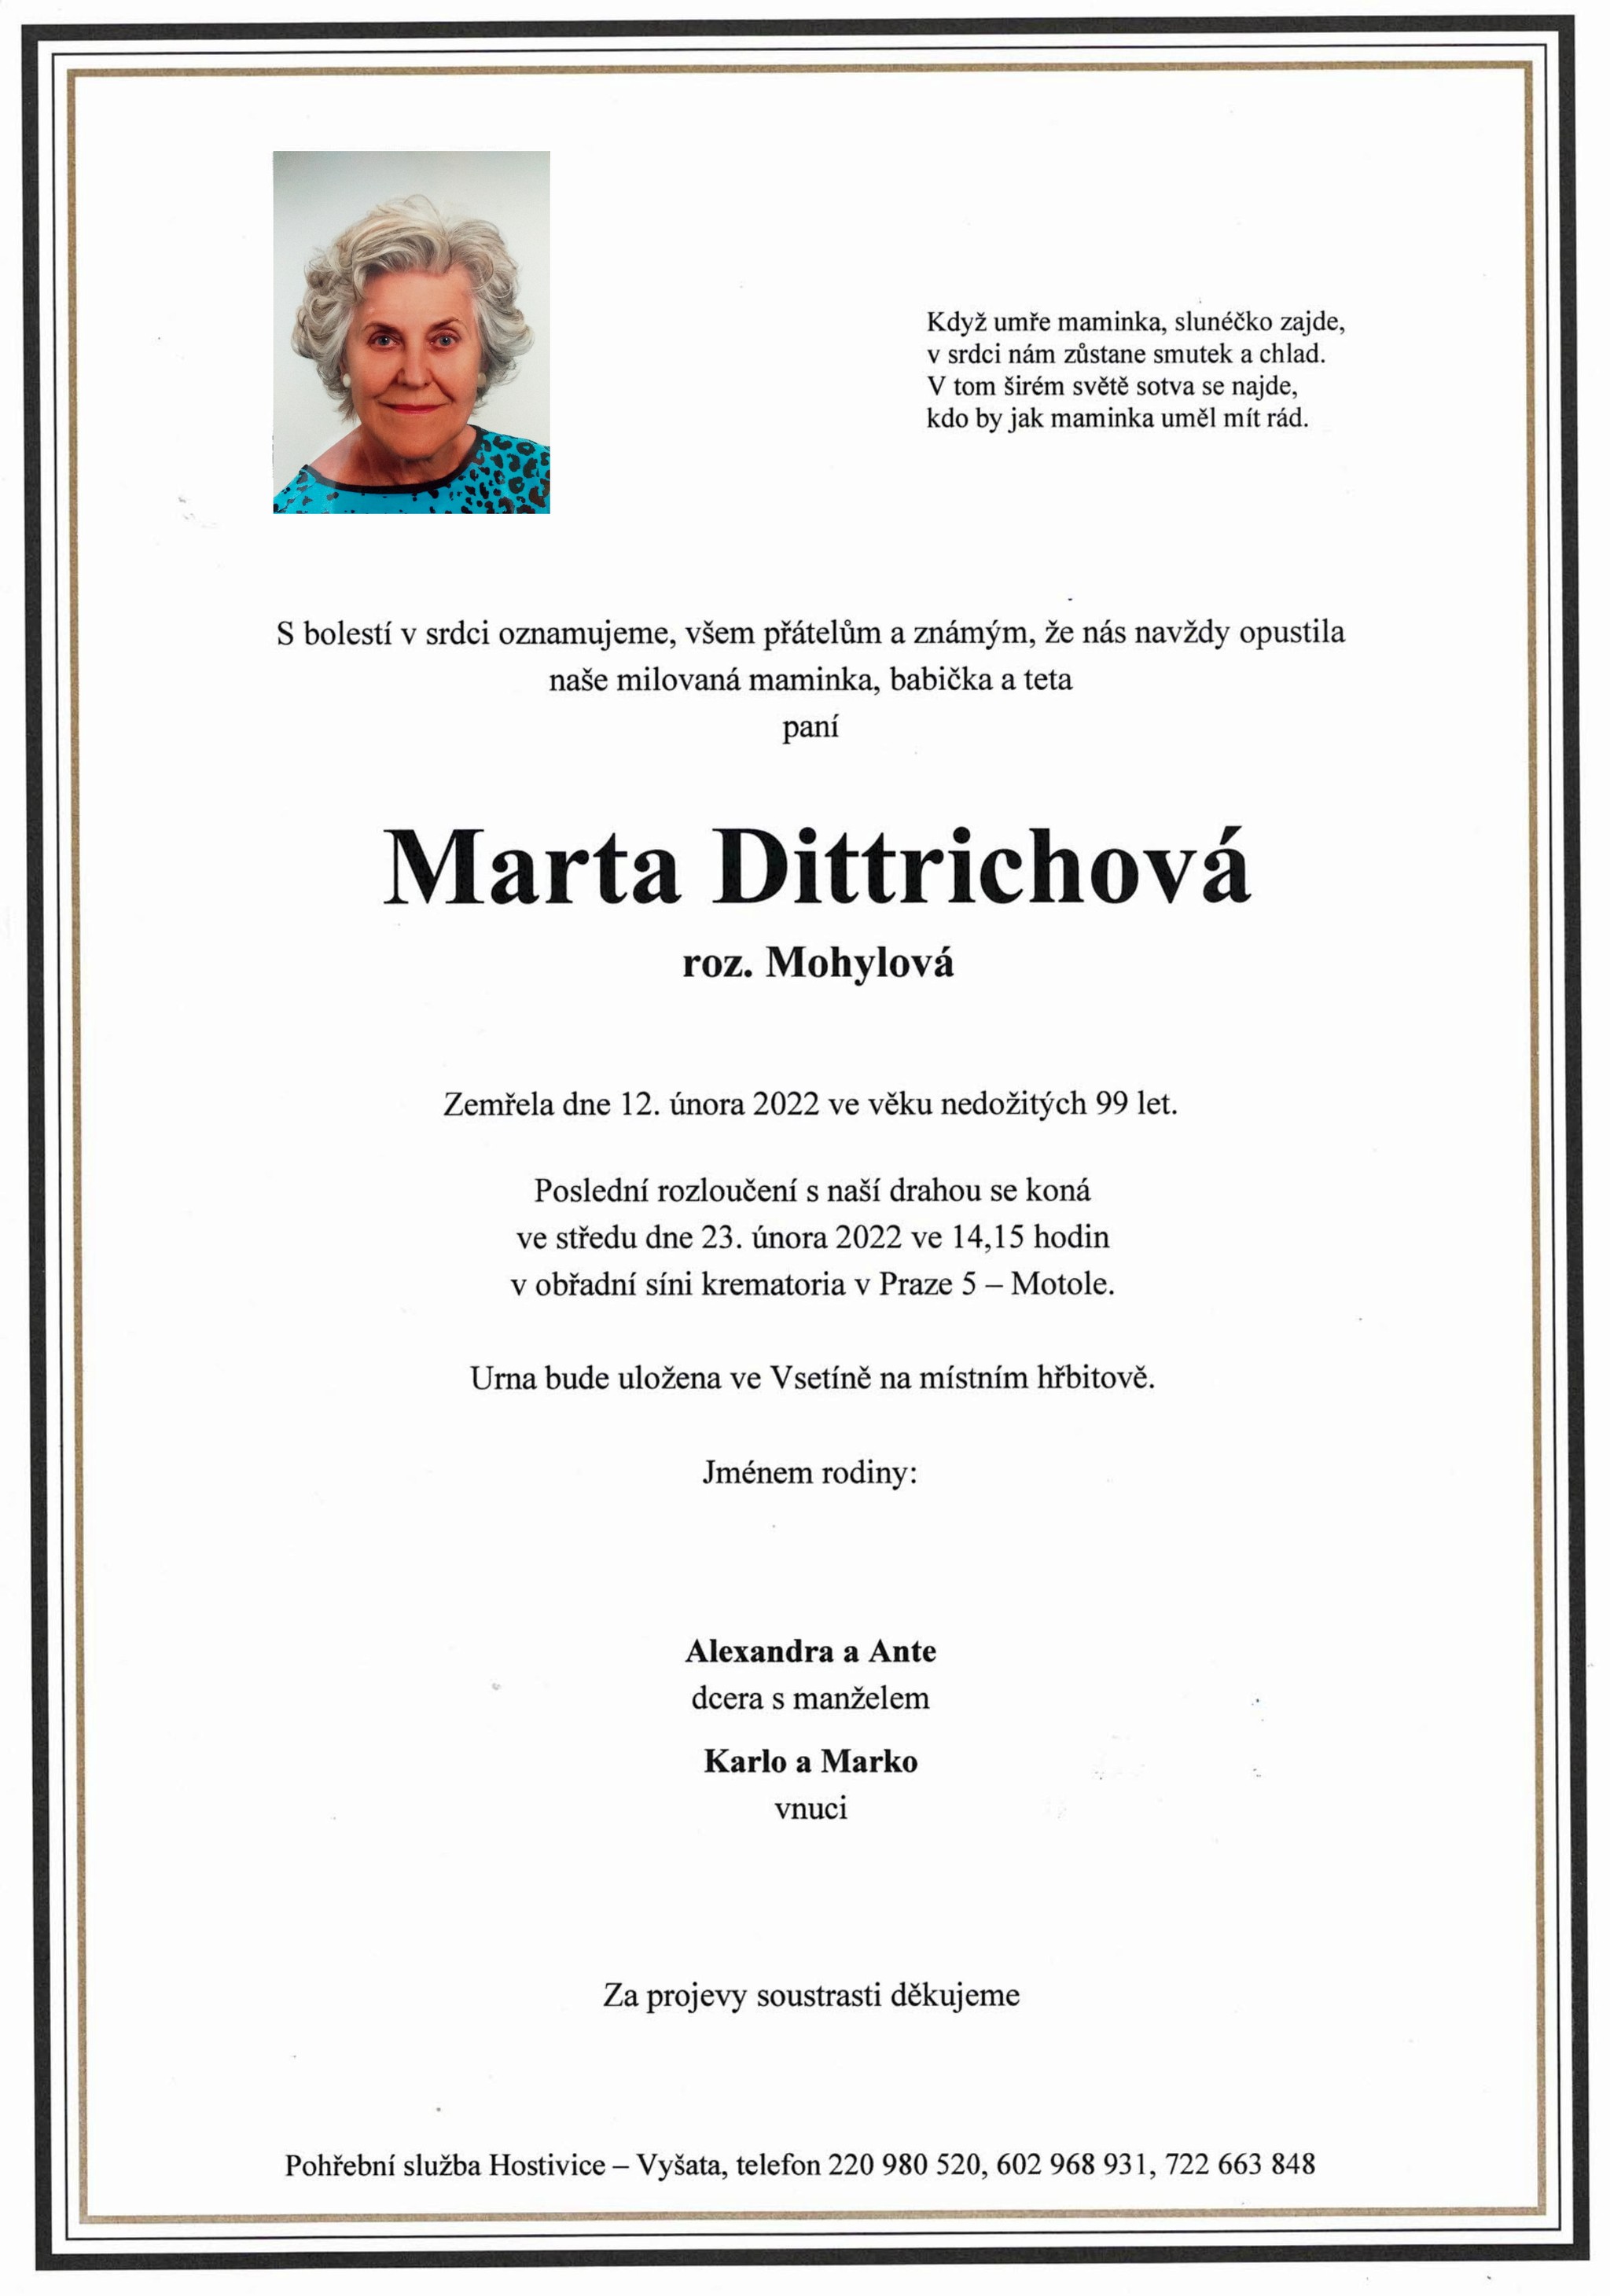 Marta Dittrichová